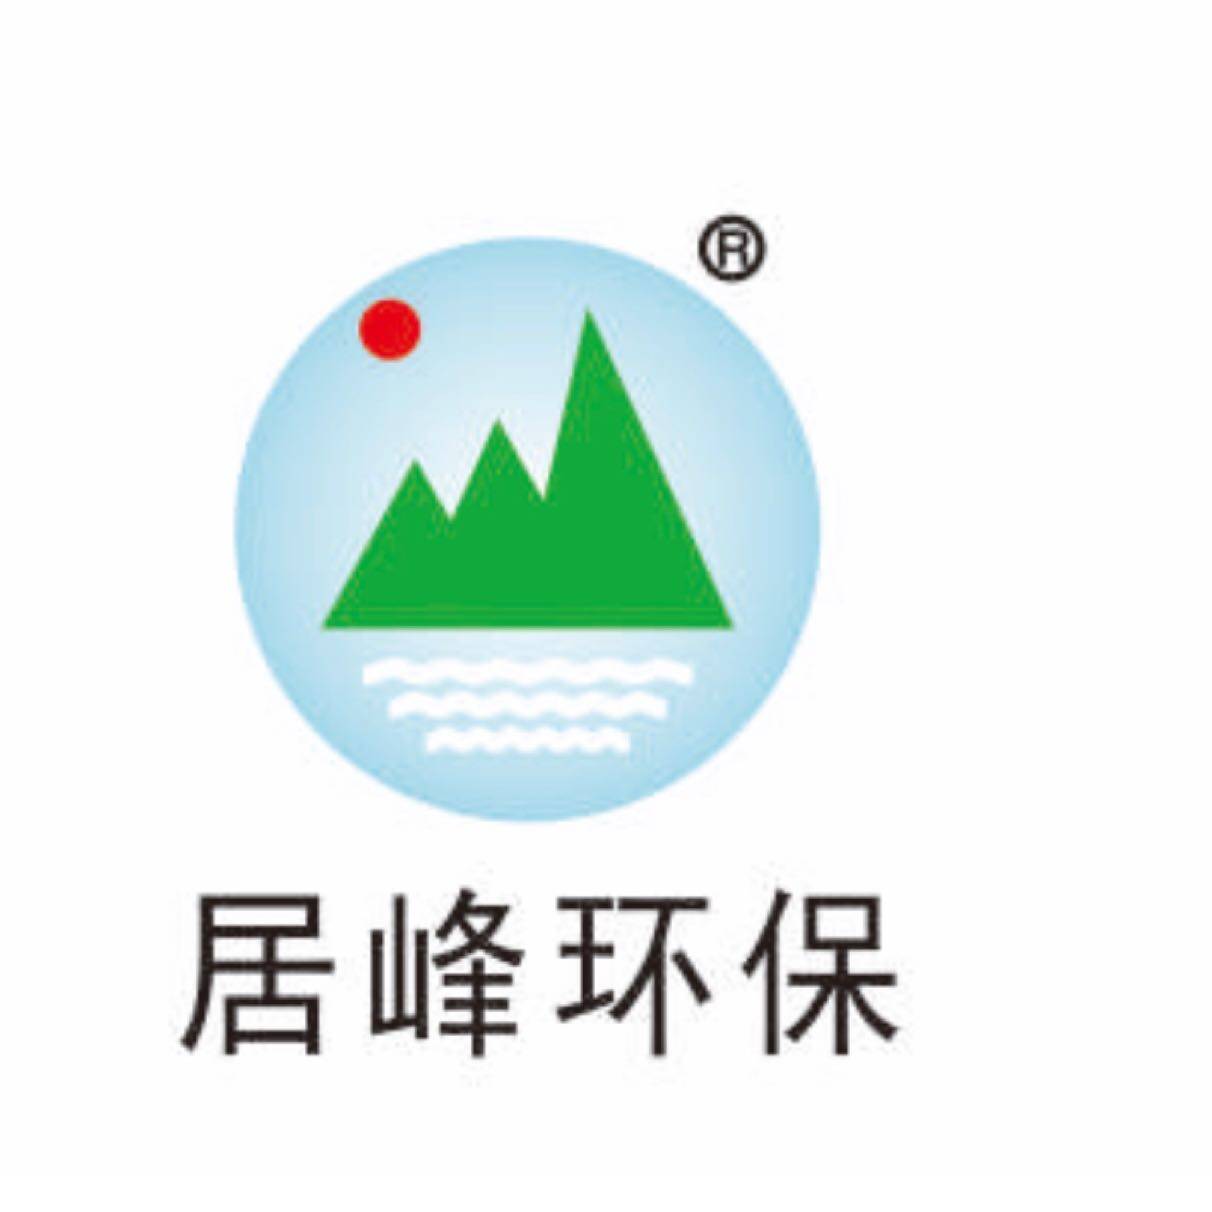 广东居峰环保科技有限公司东莞分公司logo